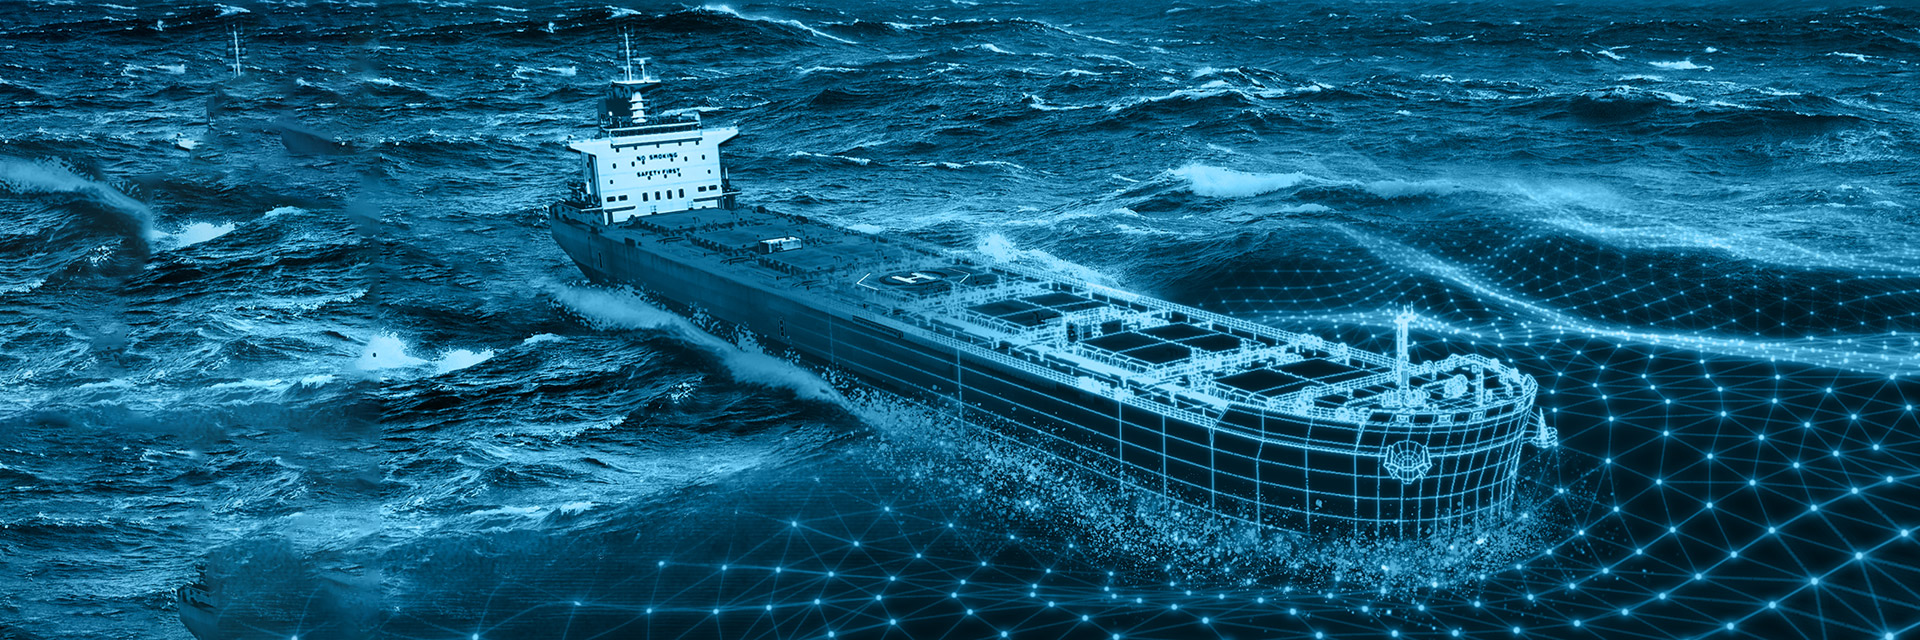 Проектирование, конструкция и техническая эксплуатация судов и объектов океанотехники (Сетевая программа  с ДВФУ)